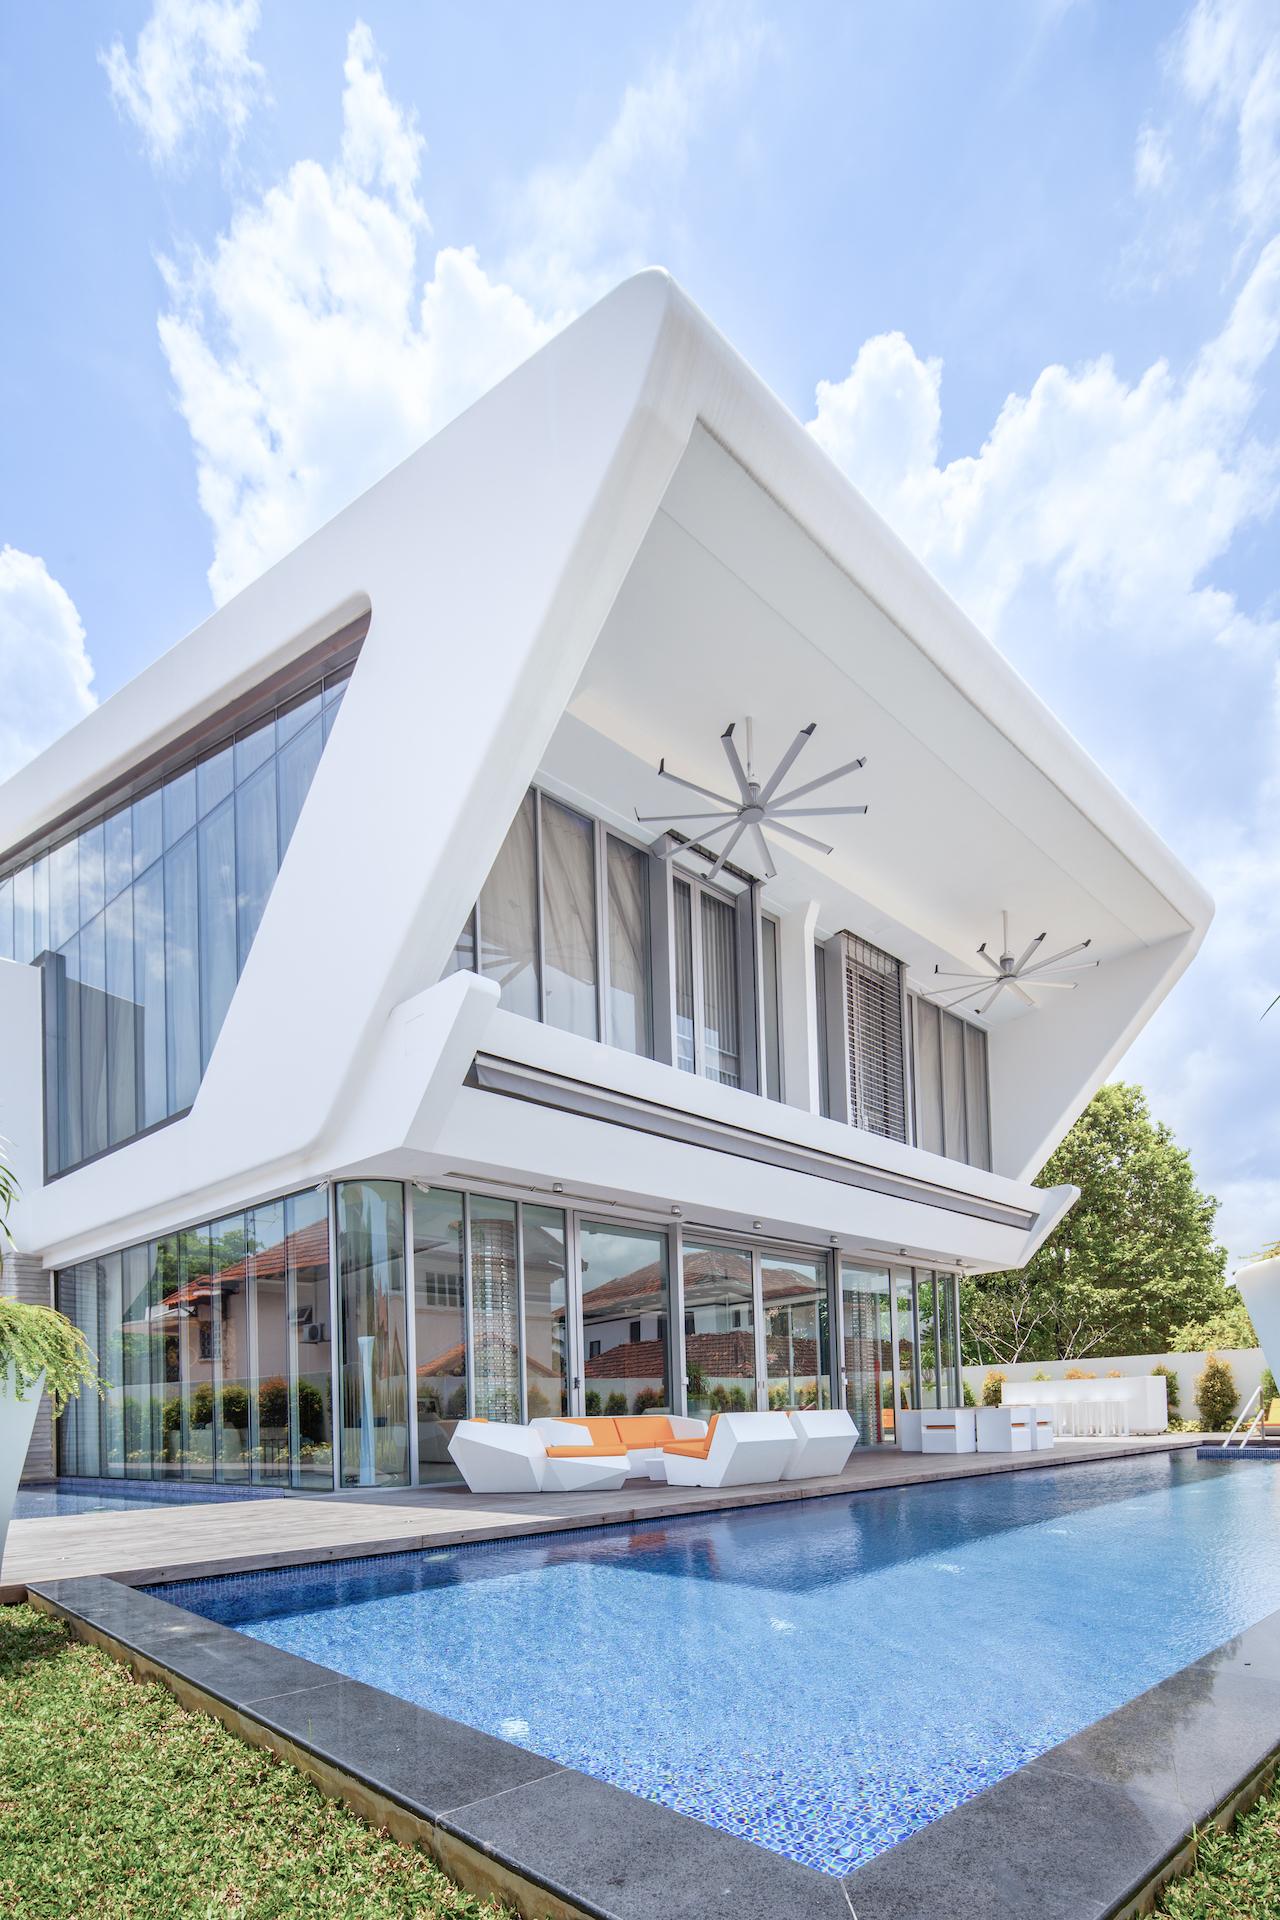 How a Lamborghini Car Inspires this Futuristic House in Singapore